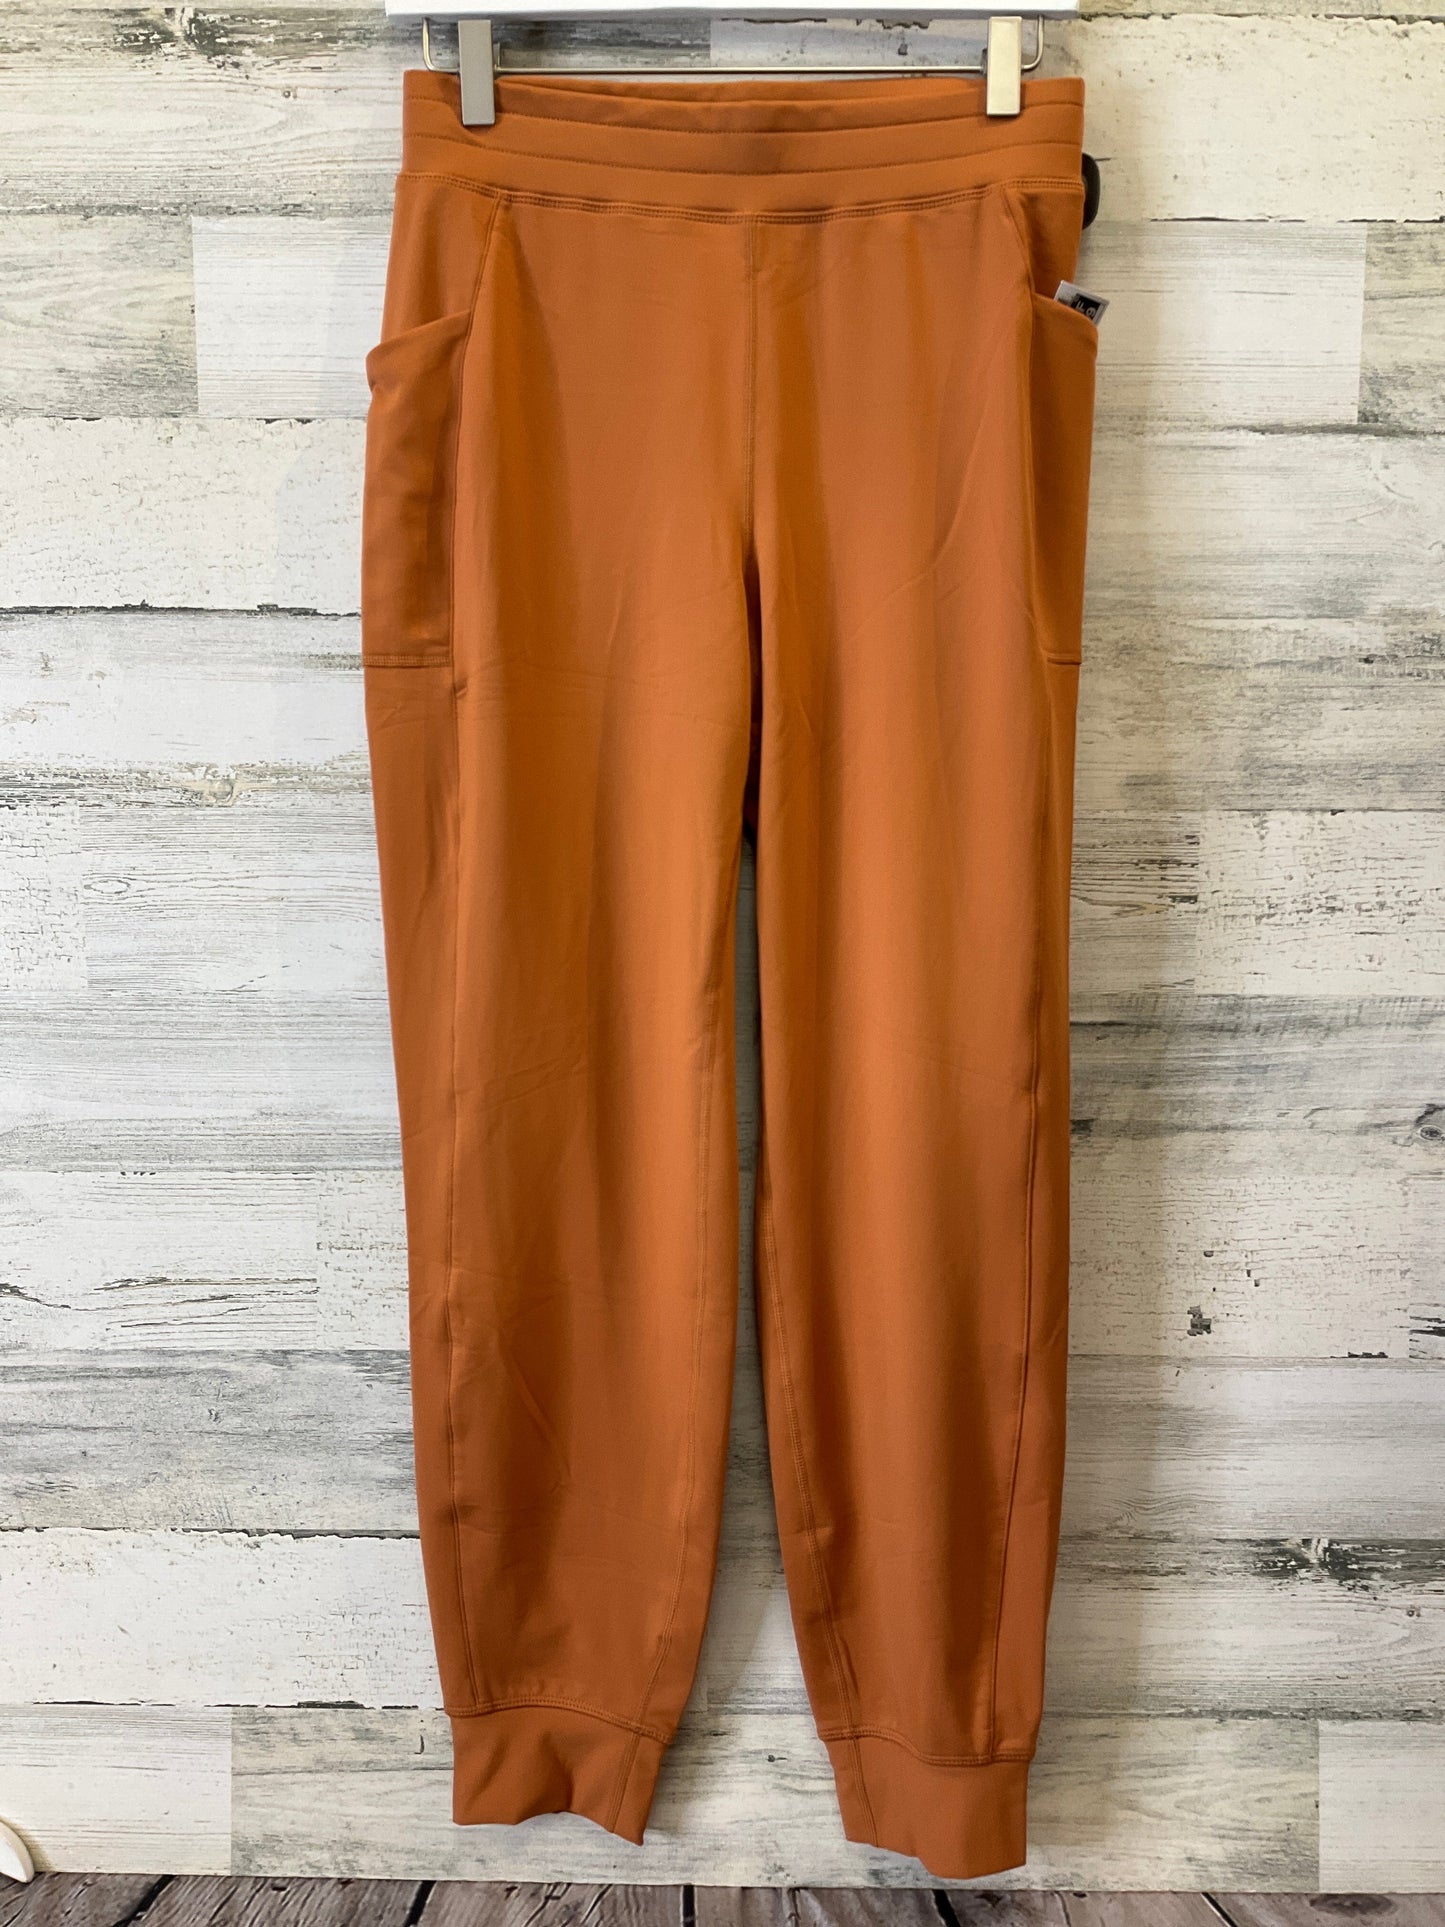 Orange Athletic Pants Fabletics, Size S